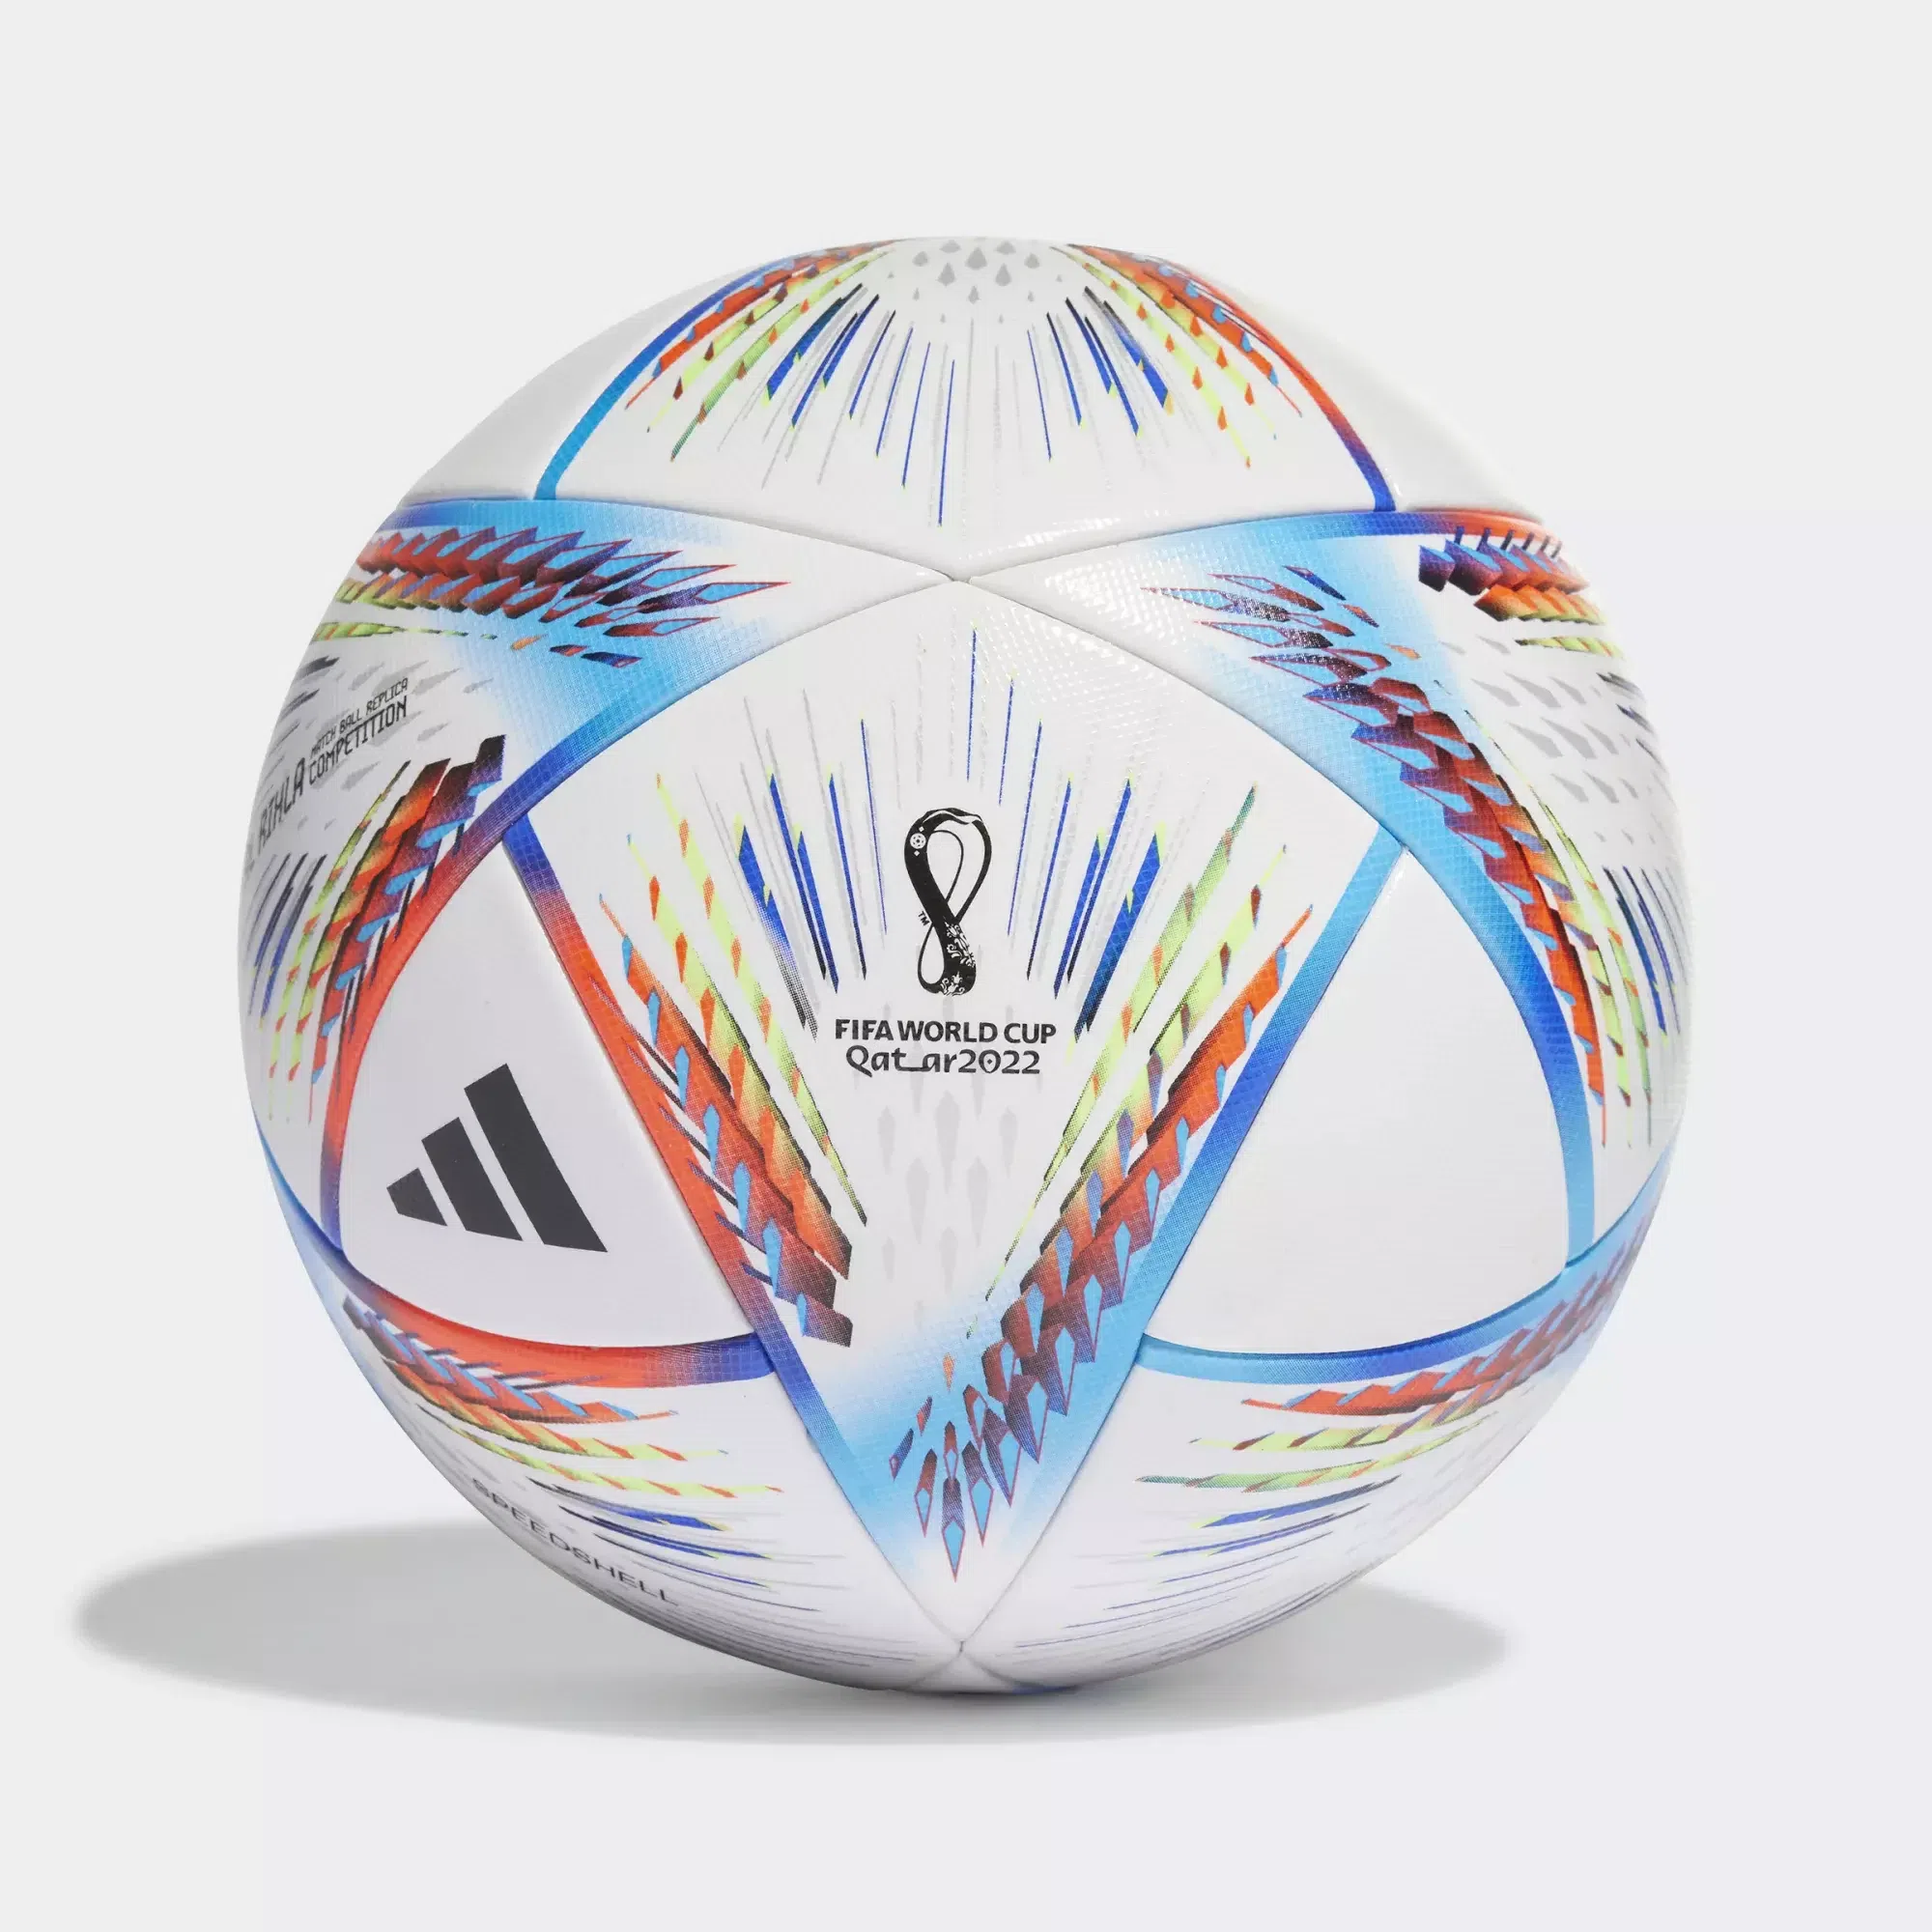 Oficiálna lopta Adidas pre MS v Katare 2022 - Al Rihla